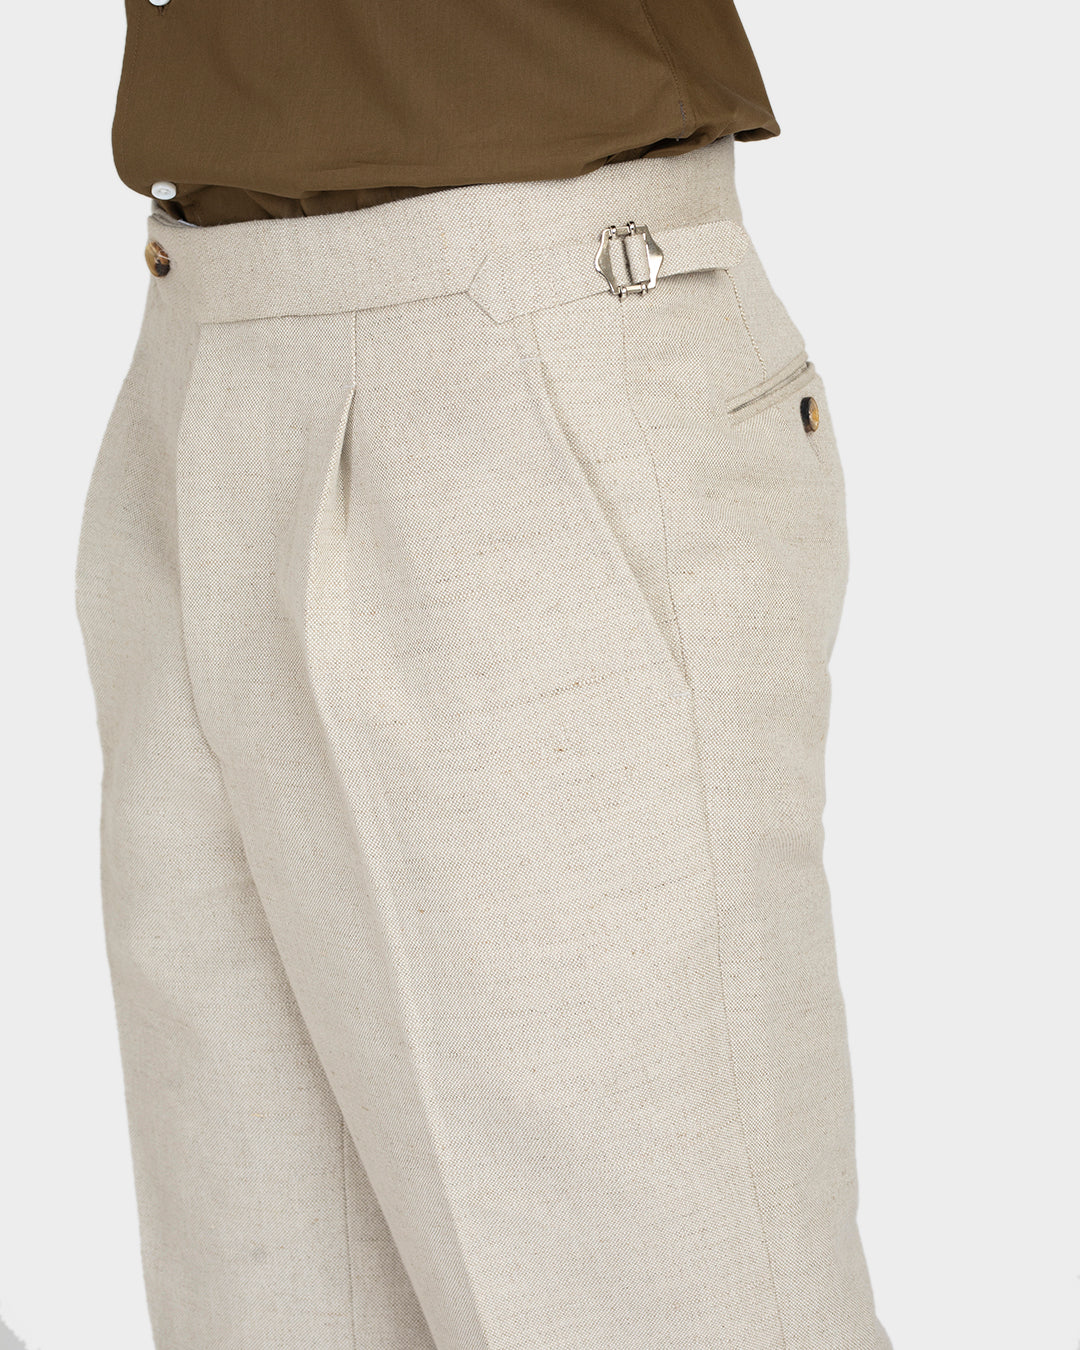 Linen Cotton Canvas: Jute Brown Shorts